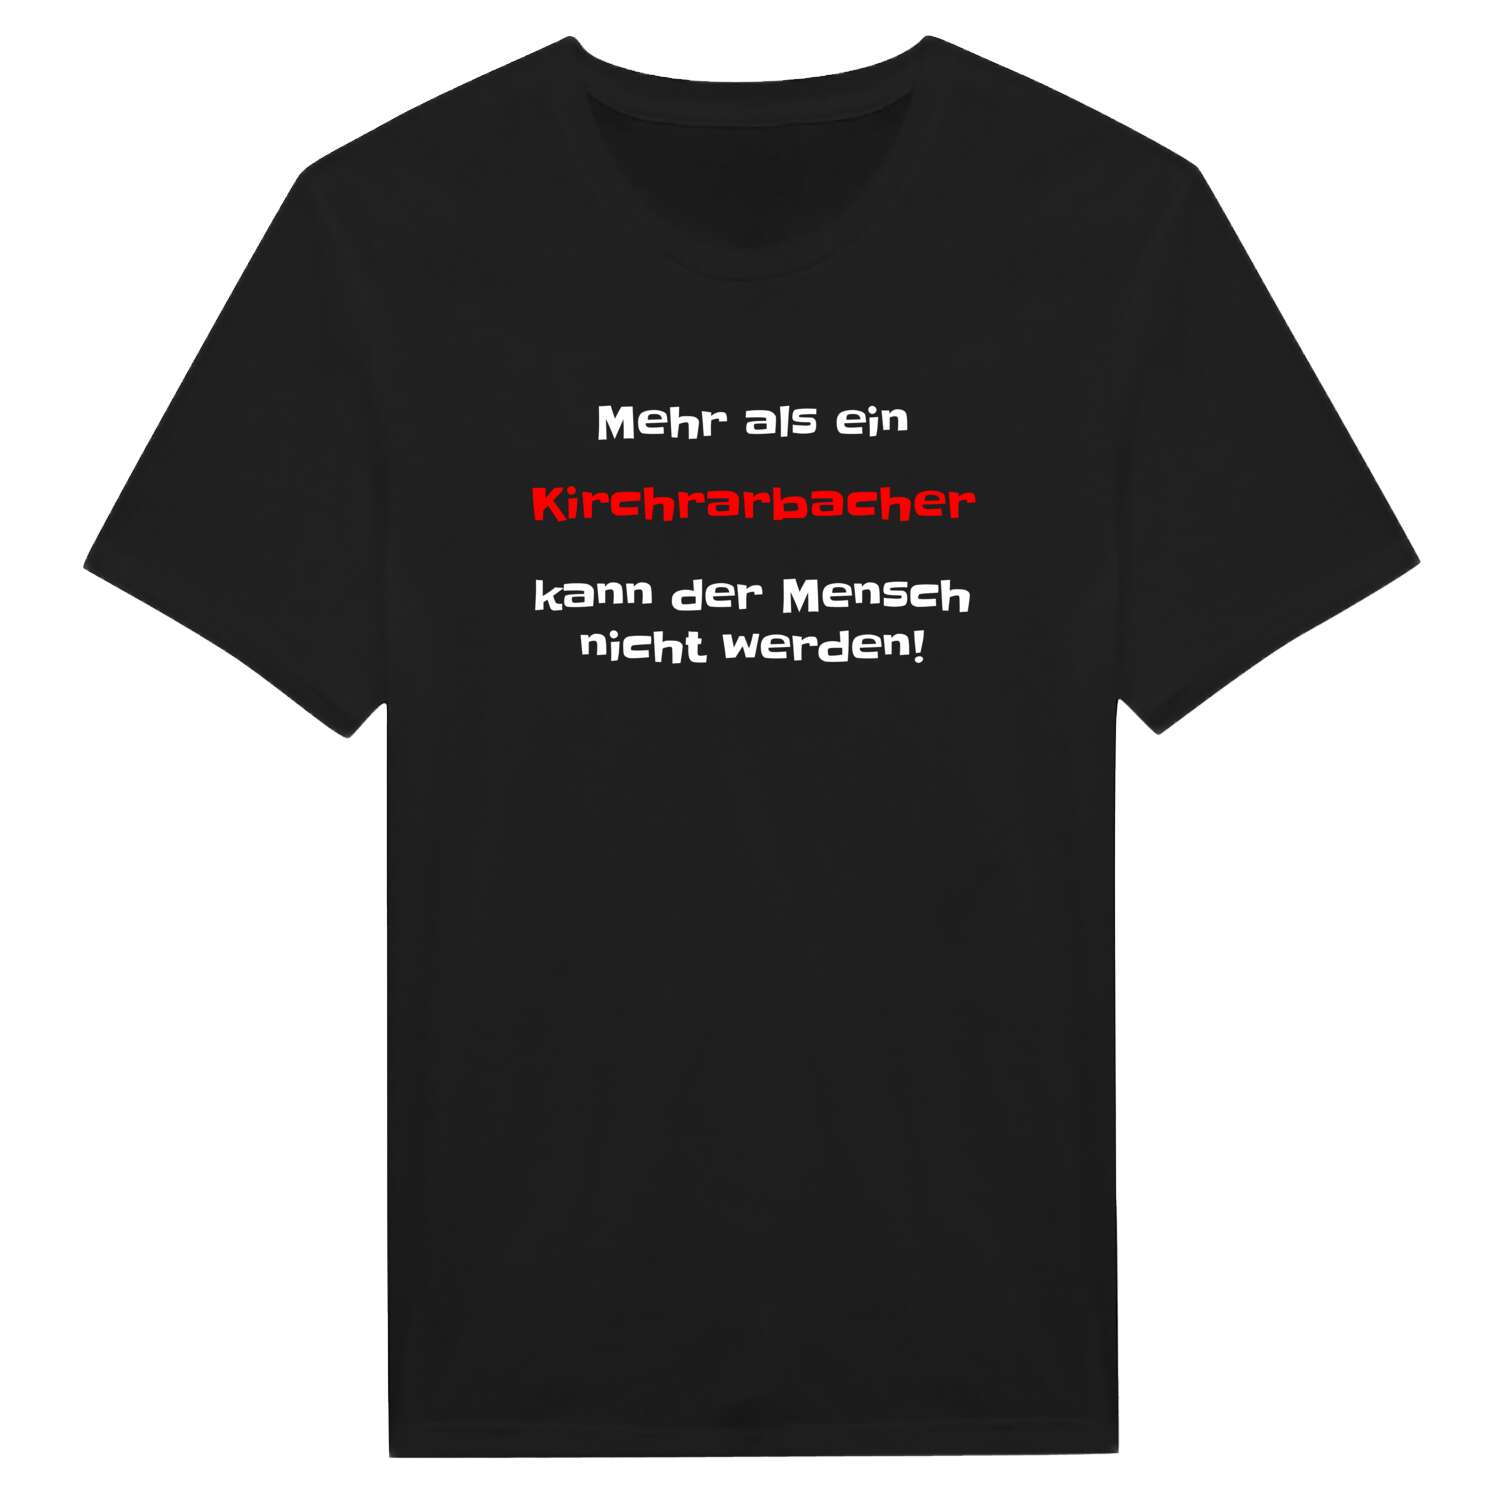 Kirchrarbach T-Shirt »Mehr als ein«